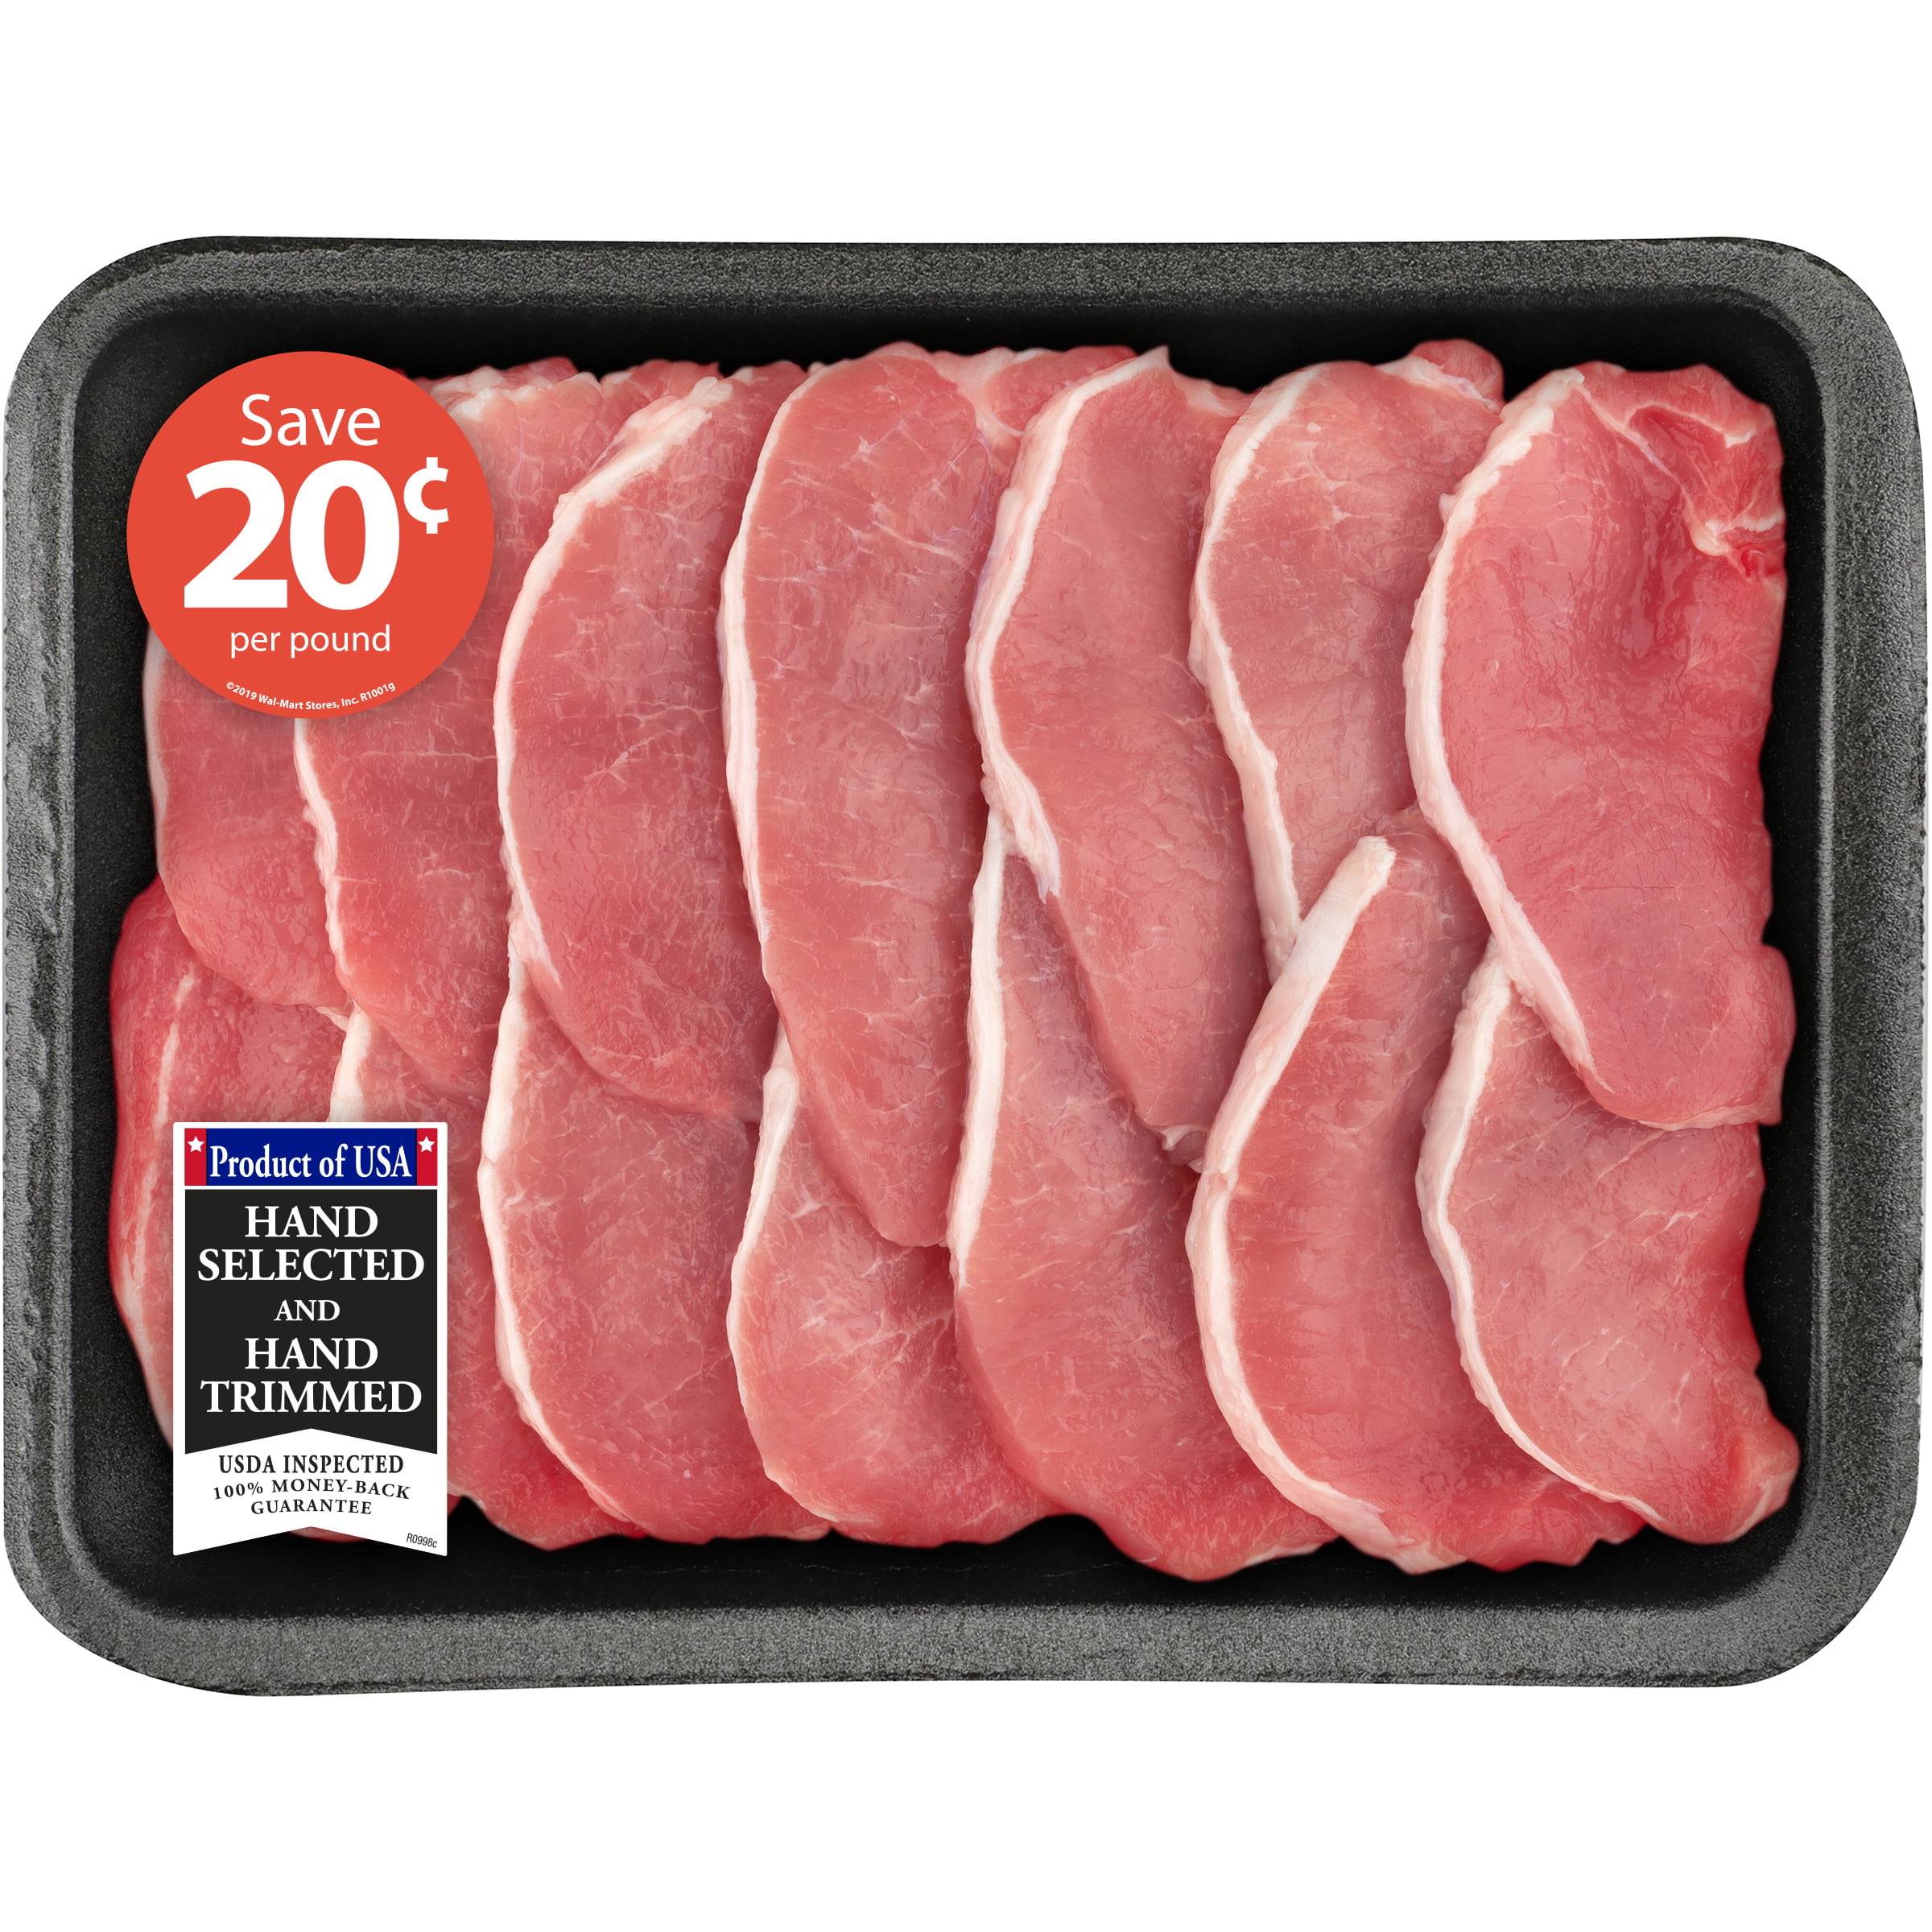 Pork Center Cut Loin Chops Thin Boneless Family Pack, 2.0 - 3.2 lb - Walmart.com - Walmart.com